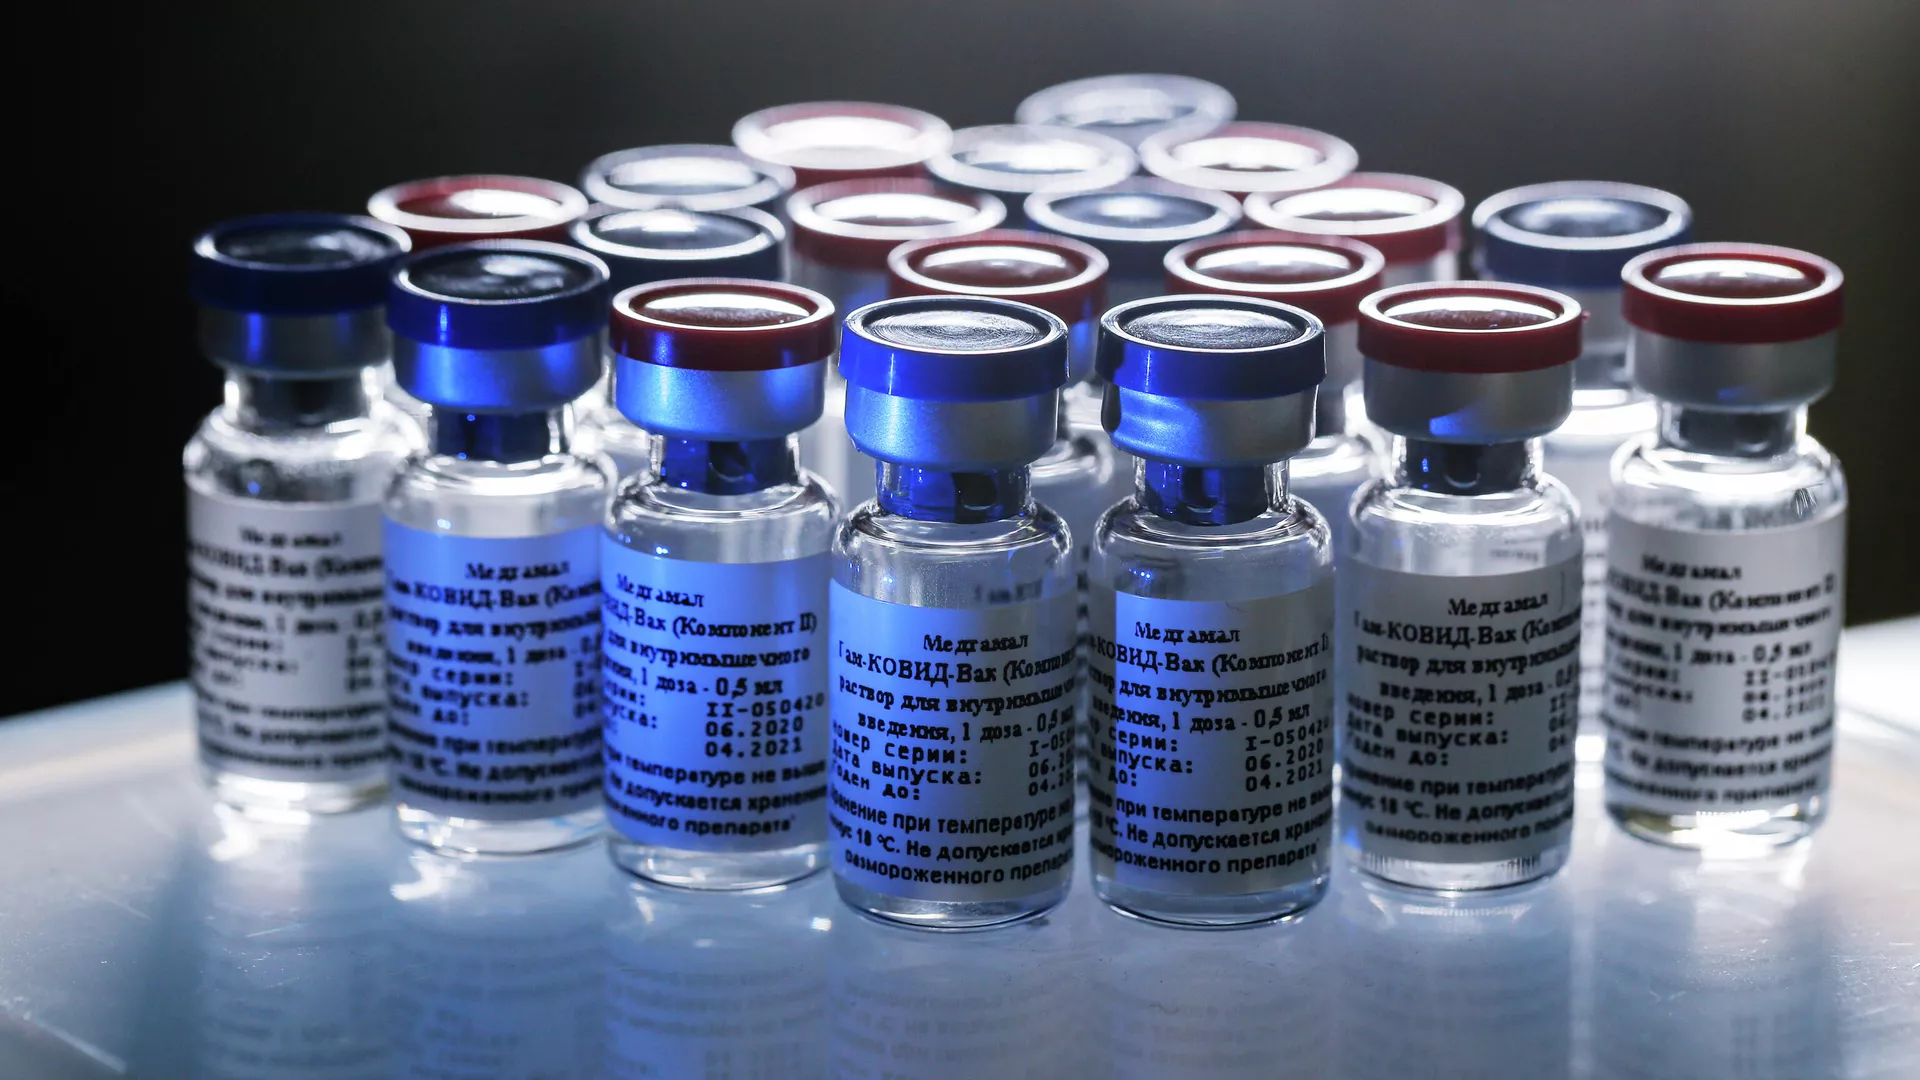 Вакцина против новой коронавирусной инфекции впервые в мире зарегистрирована в России 11 августа - РИА Новости, 1920, 17.08.2020